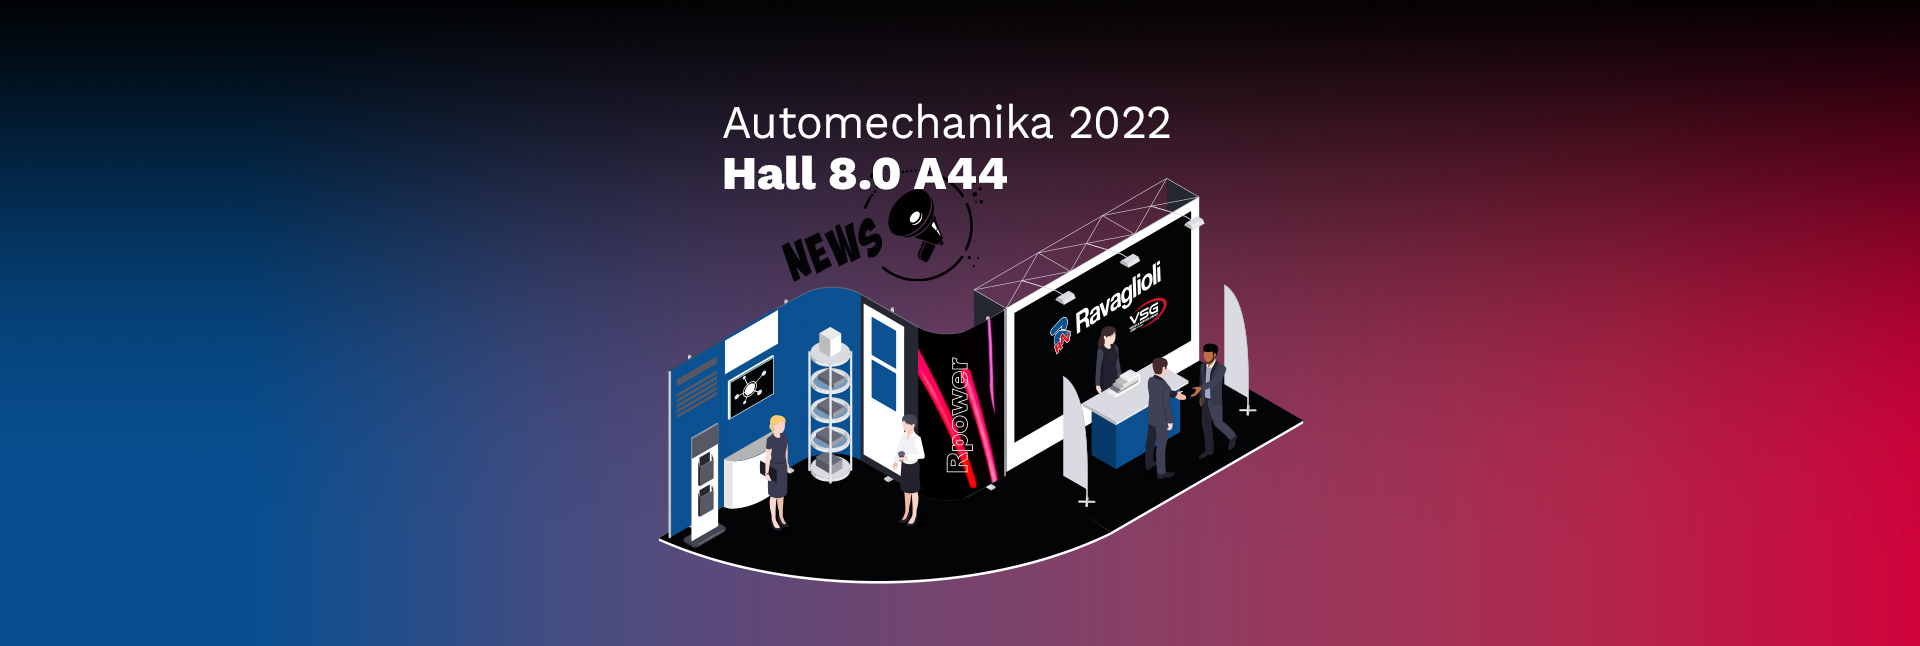 Fairs – Automechanika 2022